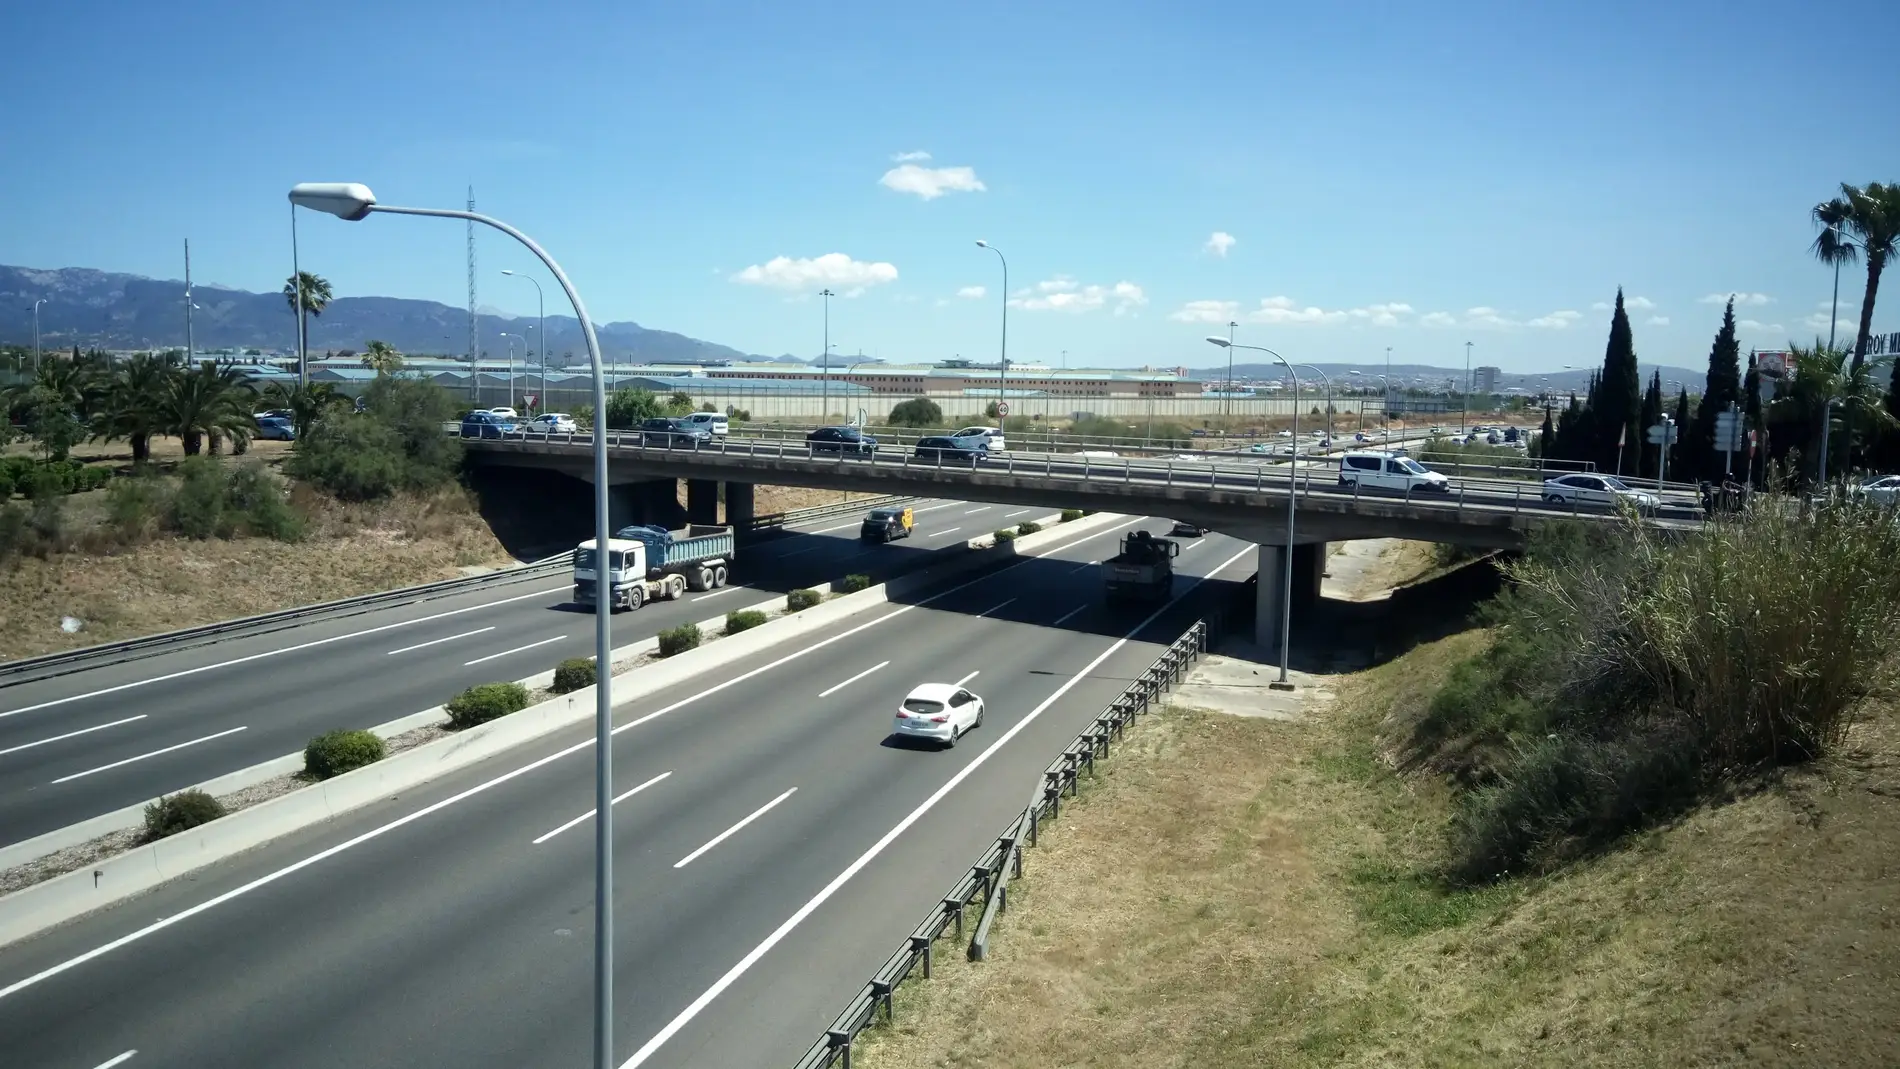 Autopista Ma-20, también conocida como Via de Cintura, una de las principales arterias de la red viaria de Mallorca